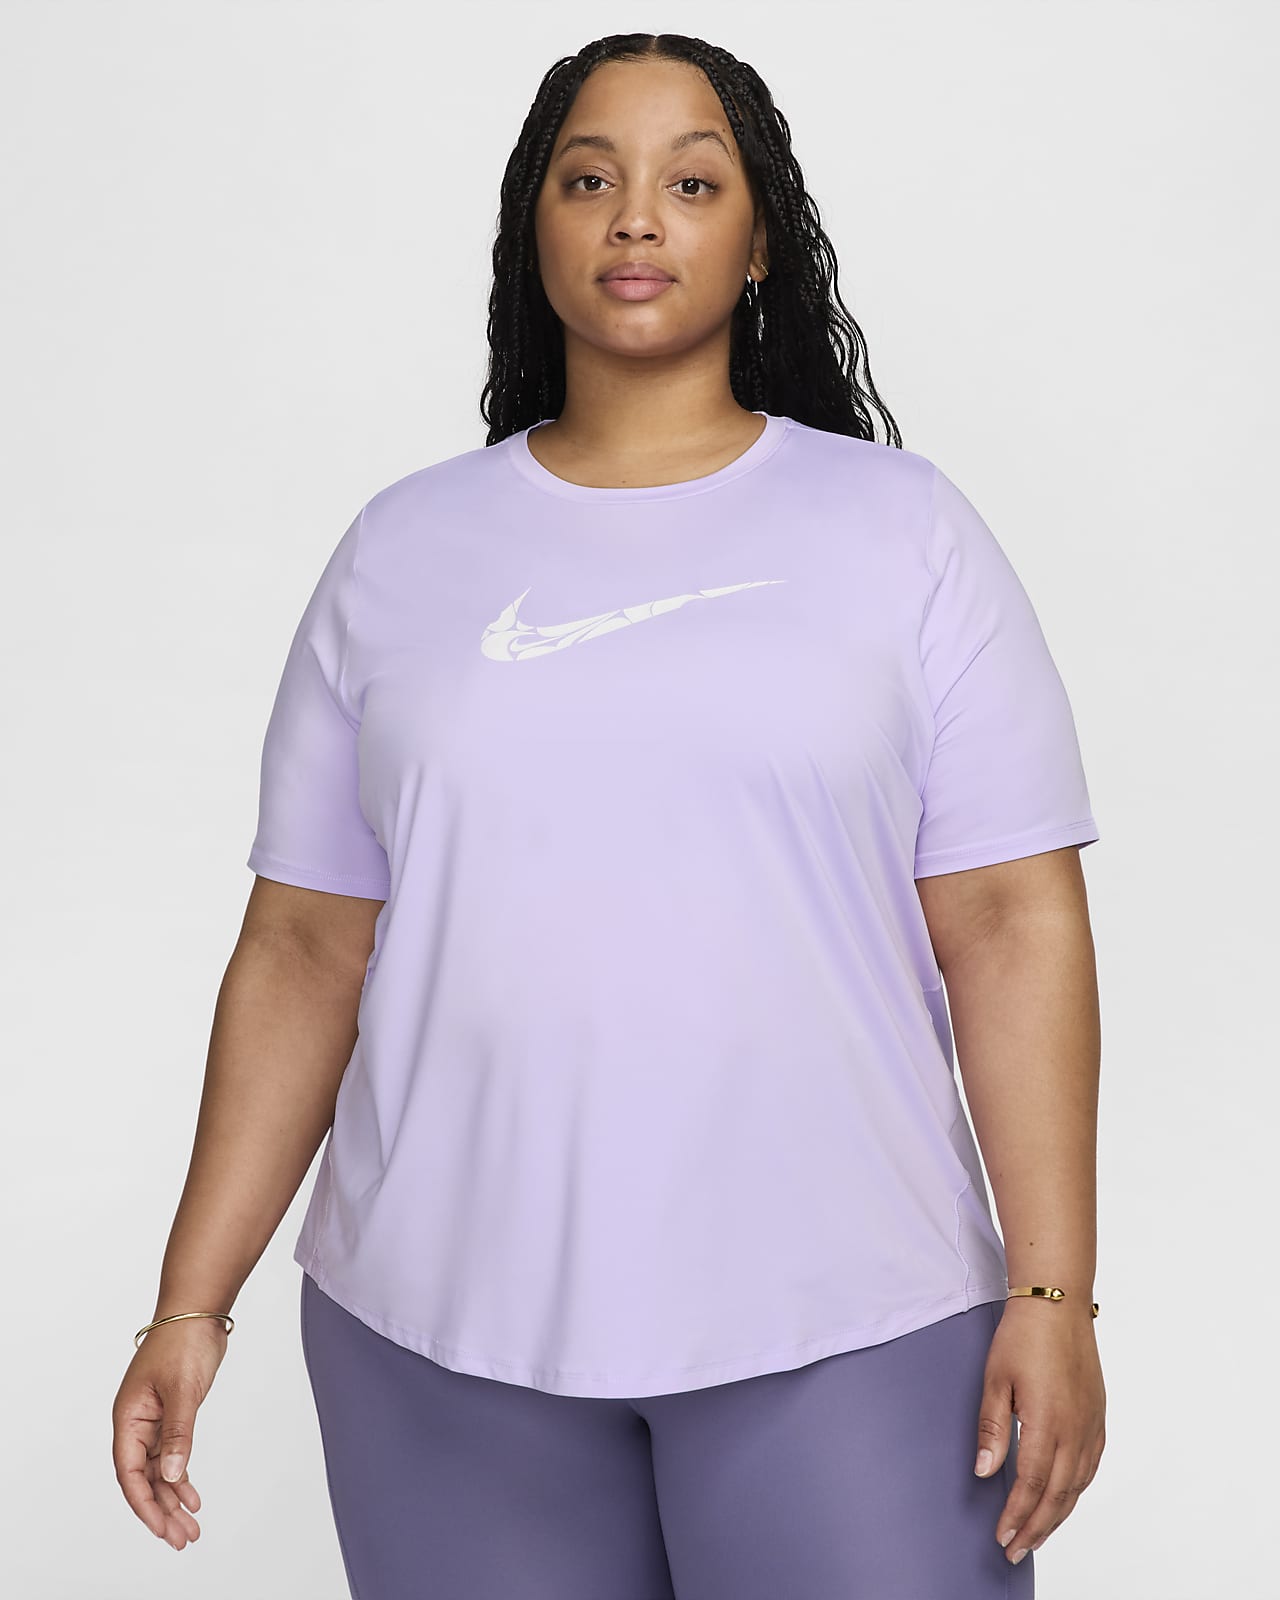 Γυναικεία κοντομάνικη μπλούζα Dri-FIT για τρέξιμο Nike One Swoosh (μεγάλα μεγέθη)